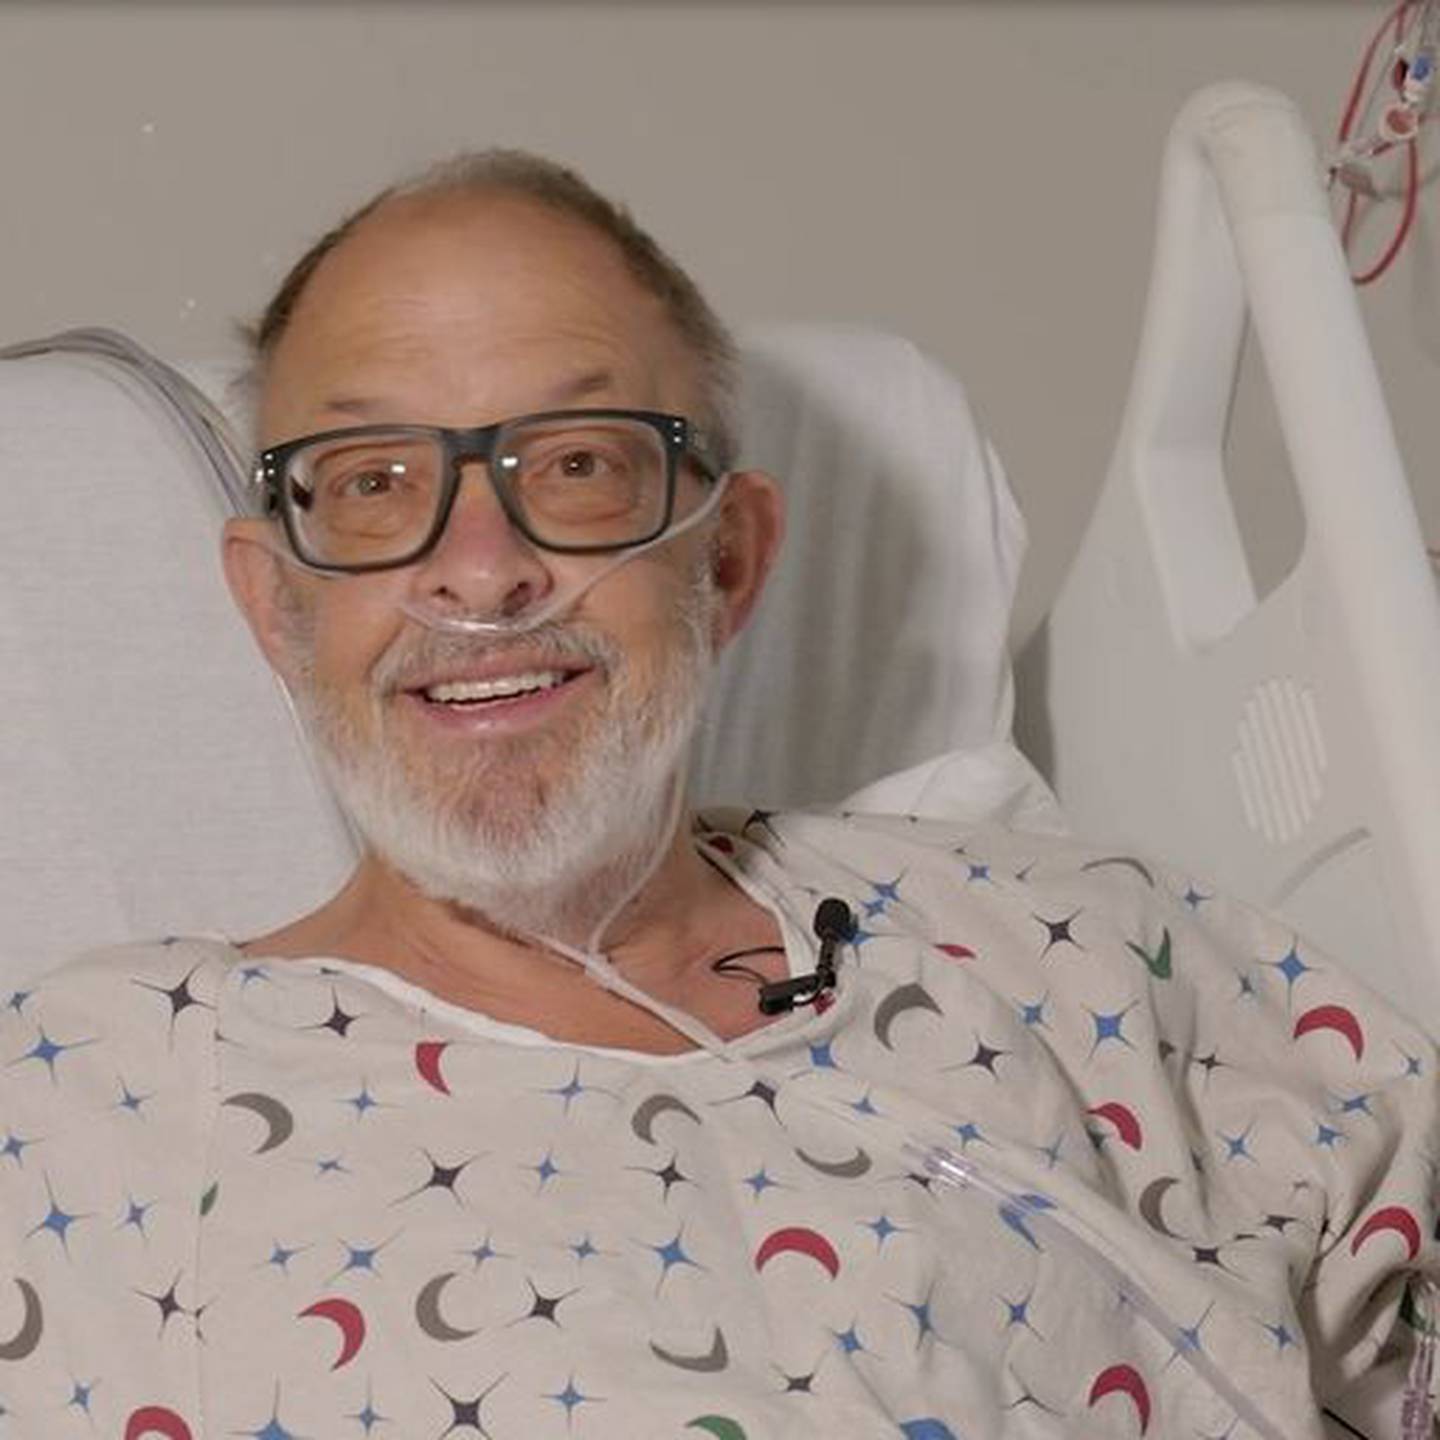 Lawrence Faucette, de 58 años, recibió el segundo trasplante de corazón de cerdo genéticamente modificado.

Fotografía: Centro Médico de la Universidad de Maryland